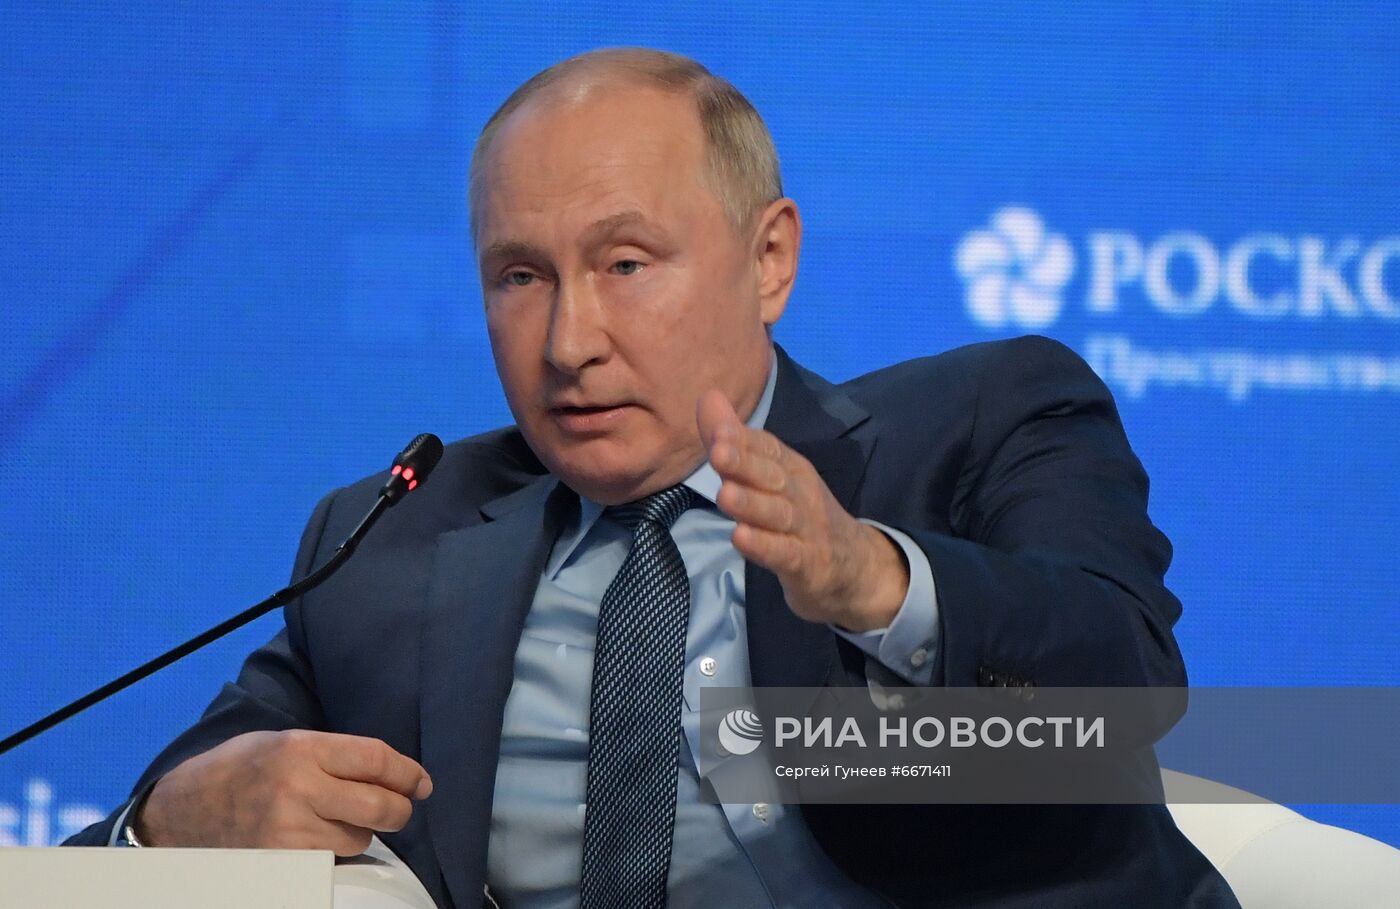 Президент РФ В. Путин принял участие в пленарном заседании форума "Российская энергетическая неделя"